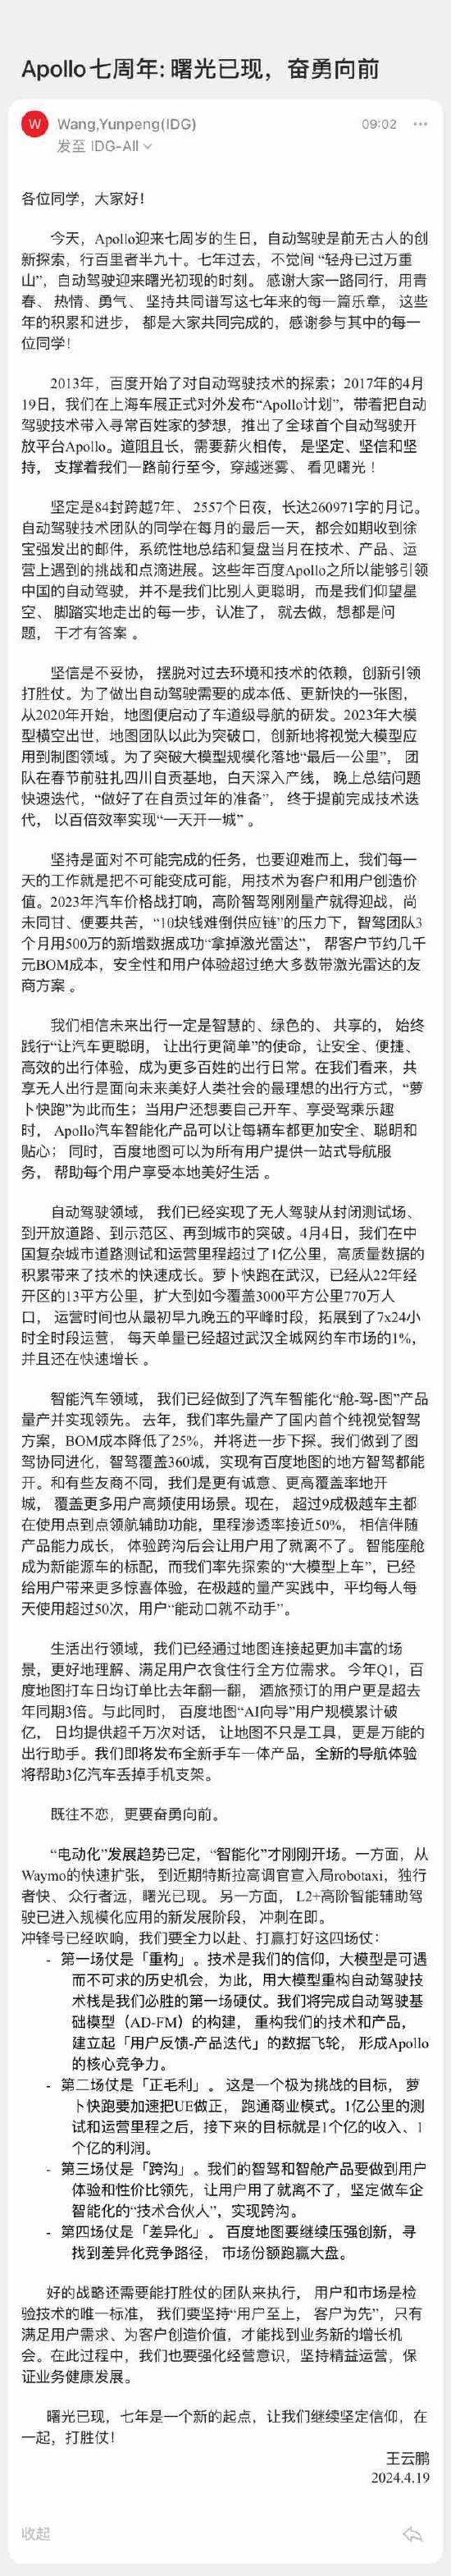 百度智驾总裁王云鹏：将发布手车一体地图产品，帮助 3 亿汽车扔掉手机支架